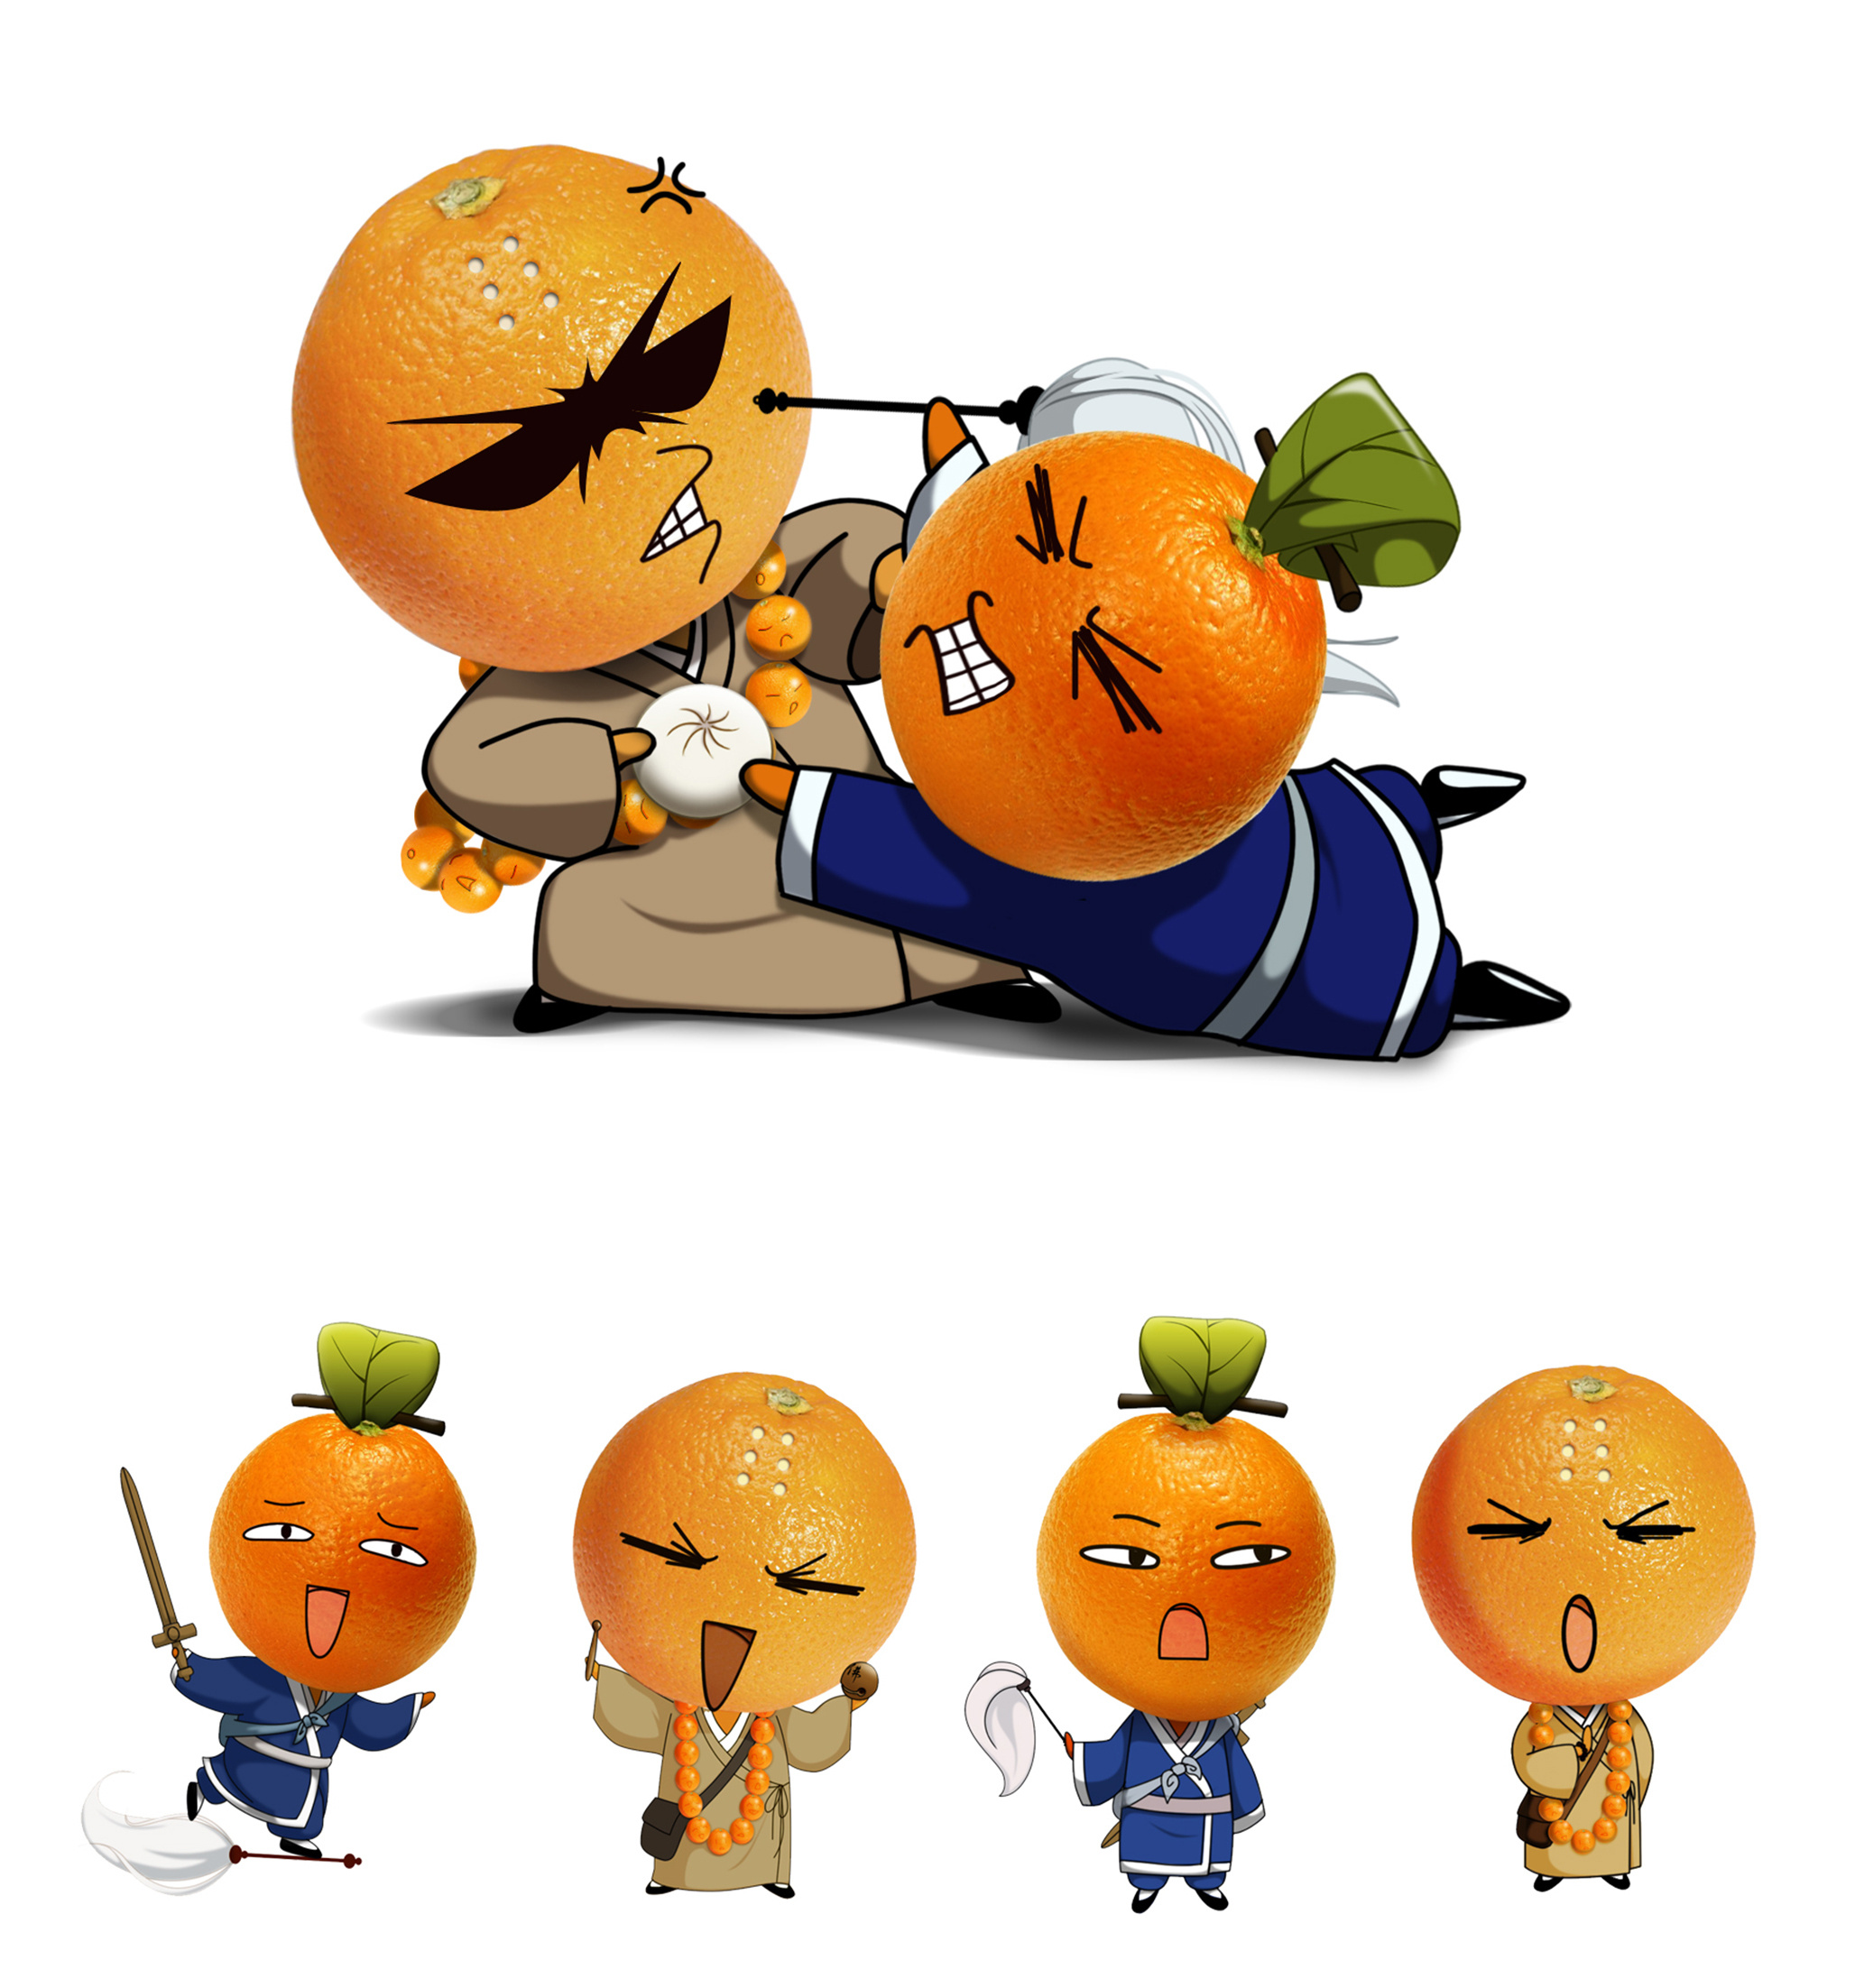 少年五之歌大橙橙橙子草莓味の喵喵酱装扮表情无损放大，头图，加载动画，点赞动画 - 哔哩哔哩